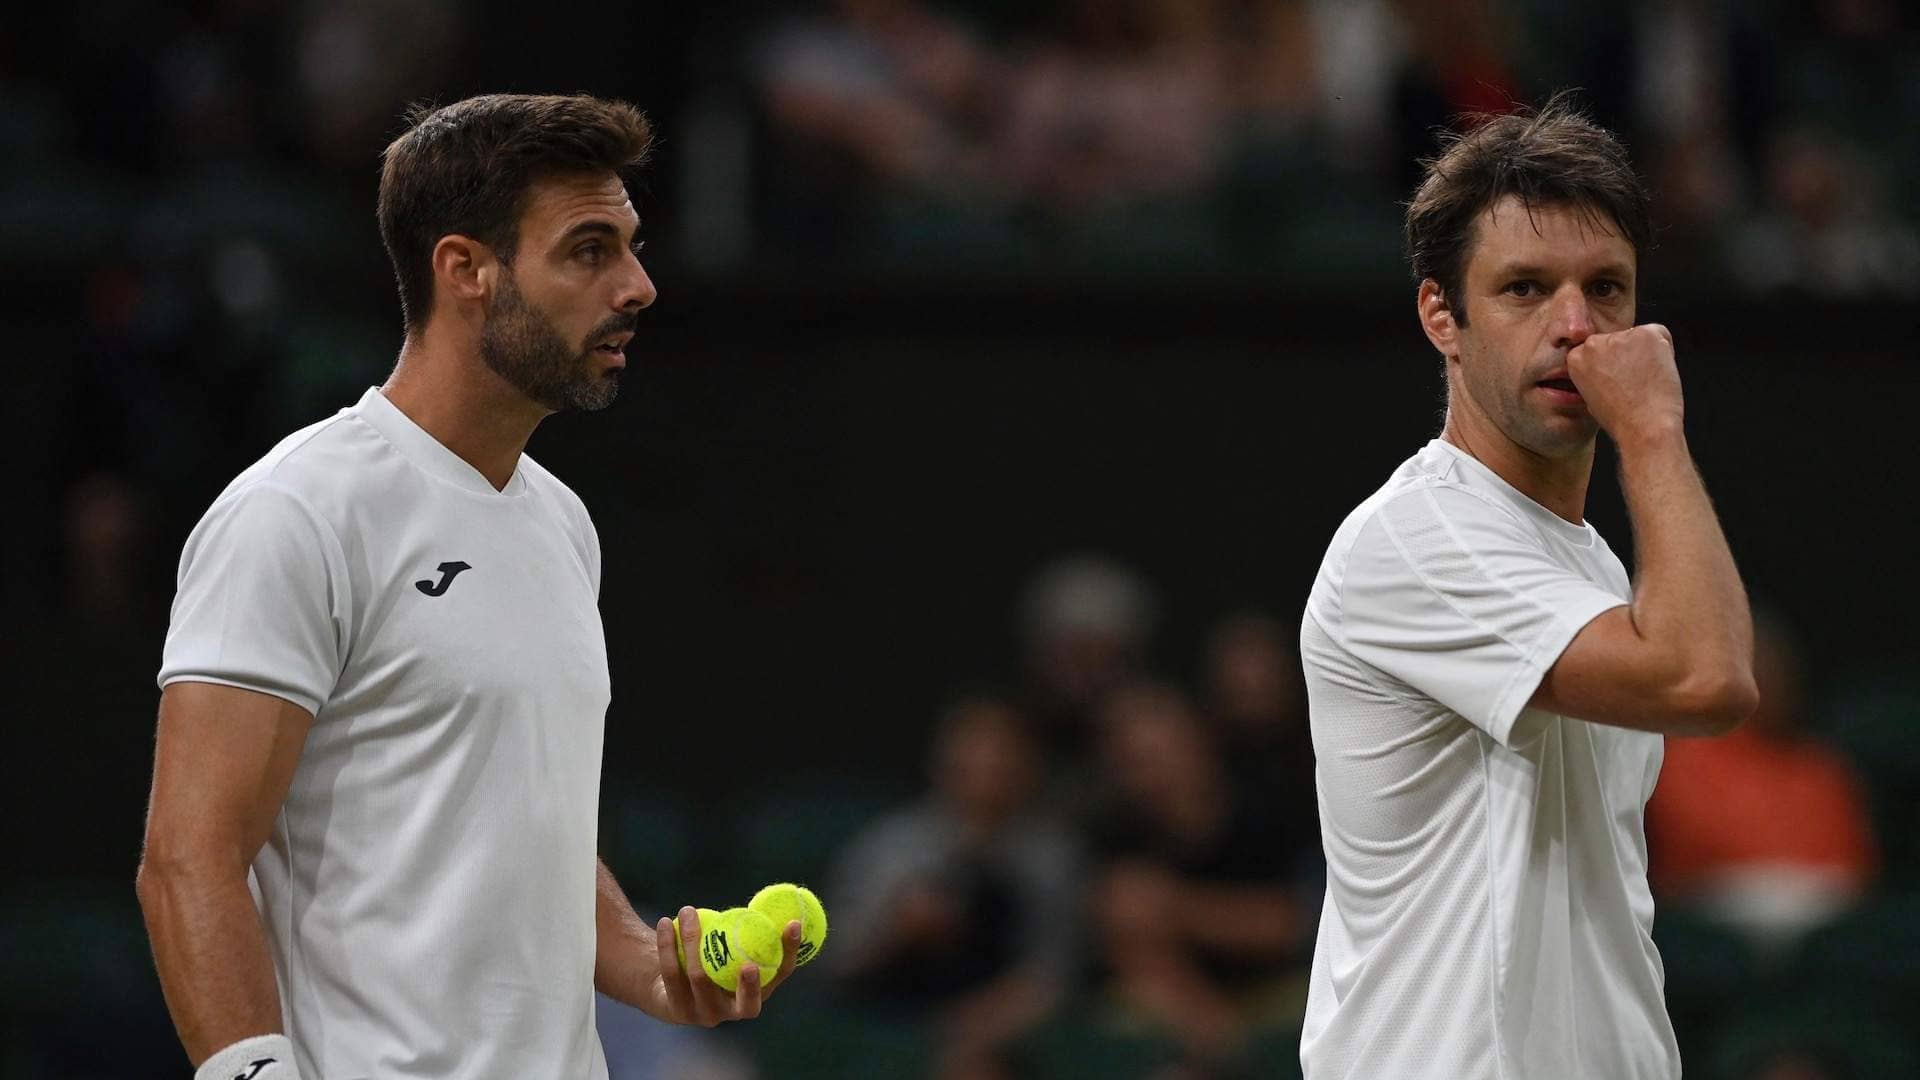 Marcel Granollers y Horacio Zeballos son los cabezas de serie No. 15 en Wimbledon 2023.